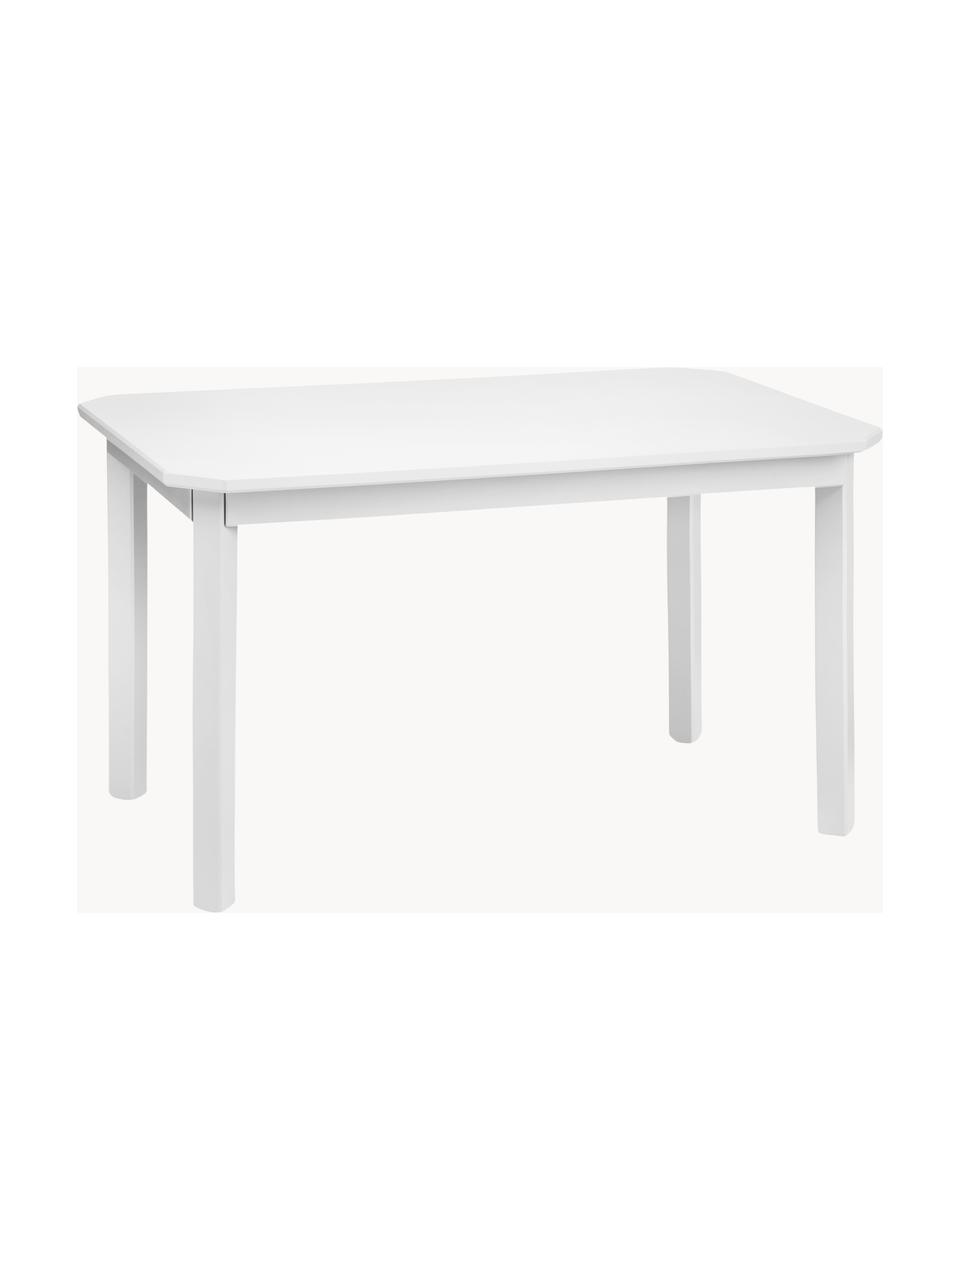 Detský drevený stôl Harlequin, Brezové drevo, drevovláknitá doska strednej hustoty (MDF), natretá farbou bez obsahu VOC, Brezové drevo, biela lakované, Š 79 x V 47 cm